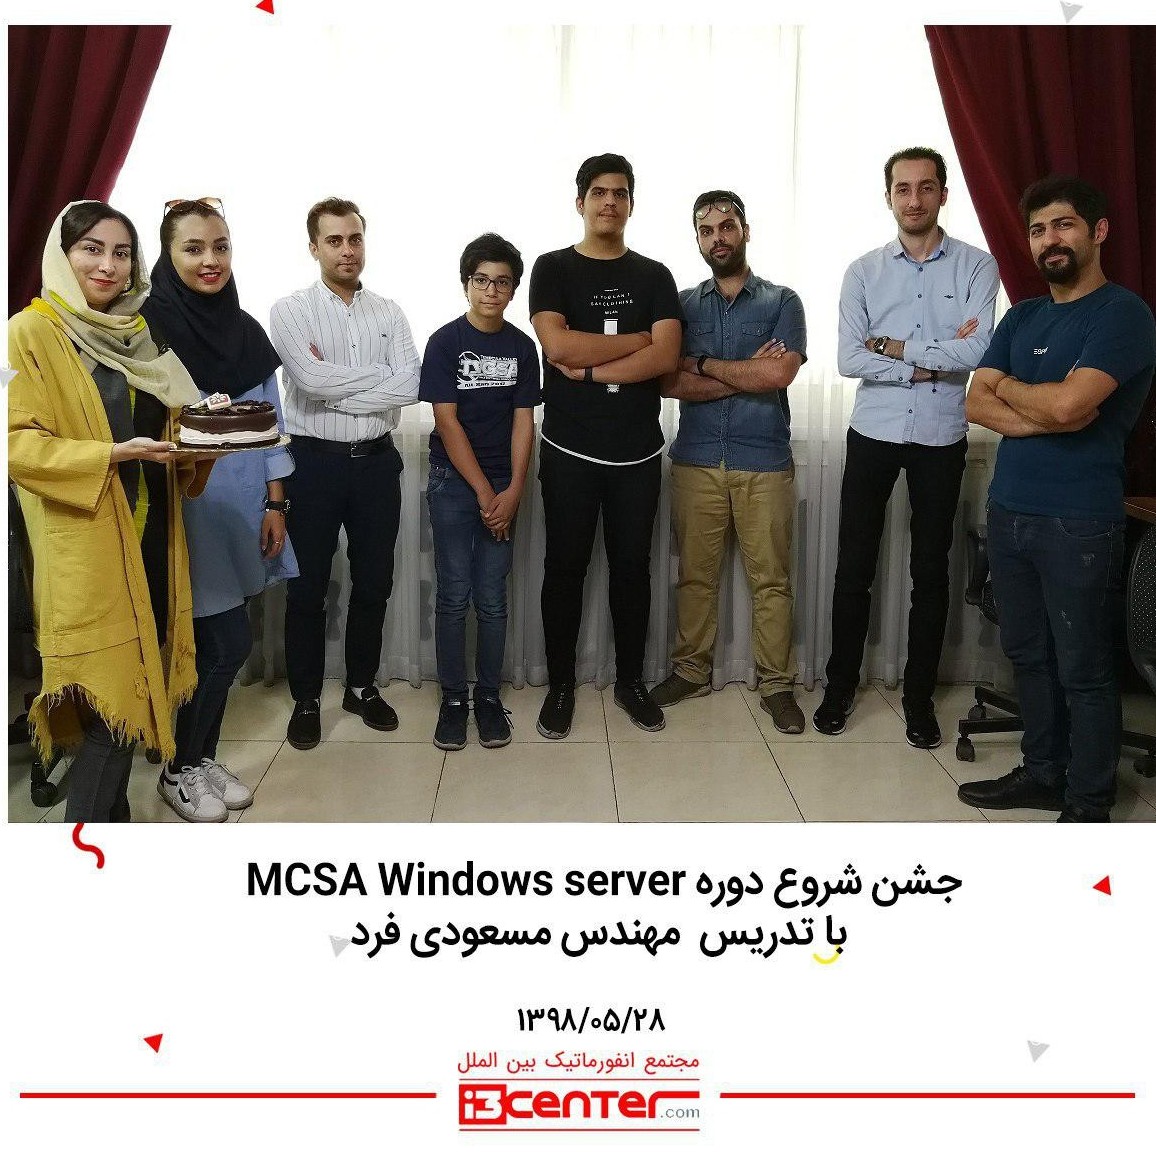 جشن شروع دوره MCSA Windows Server با تدریس مهندس مسعودی فرد